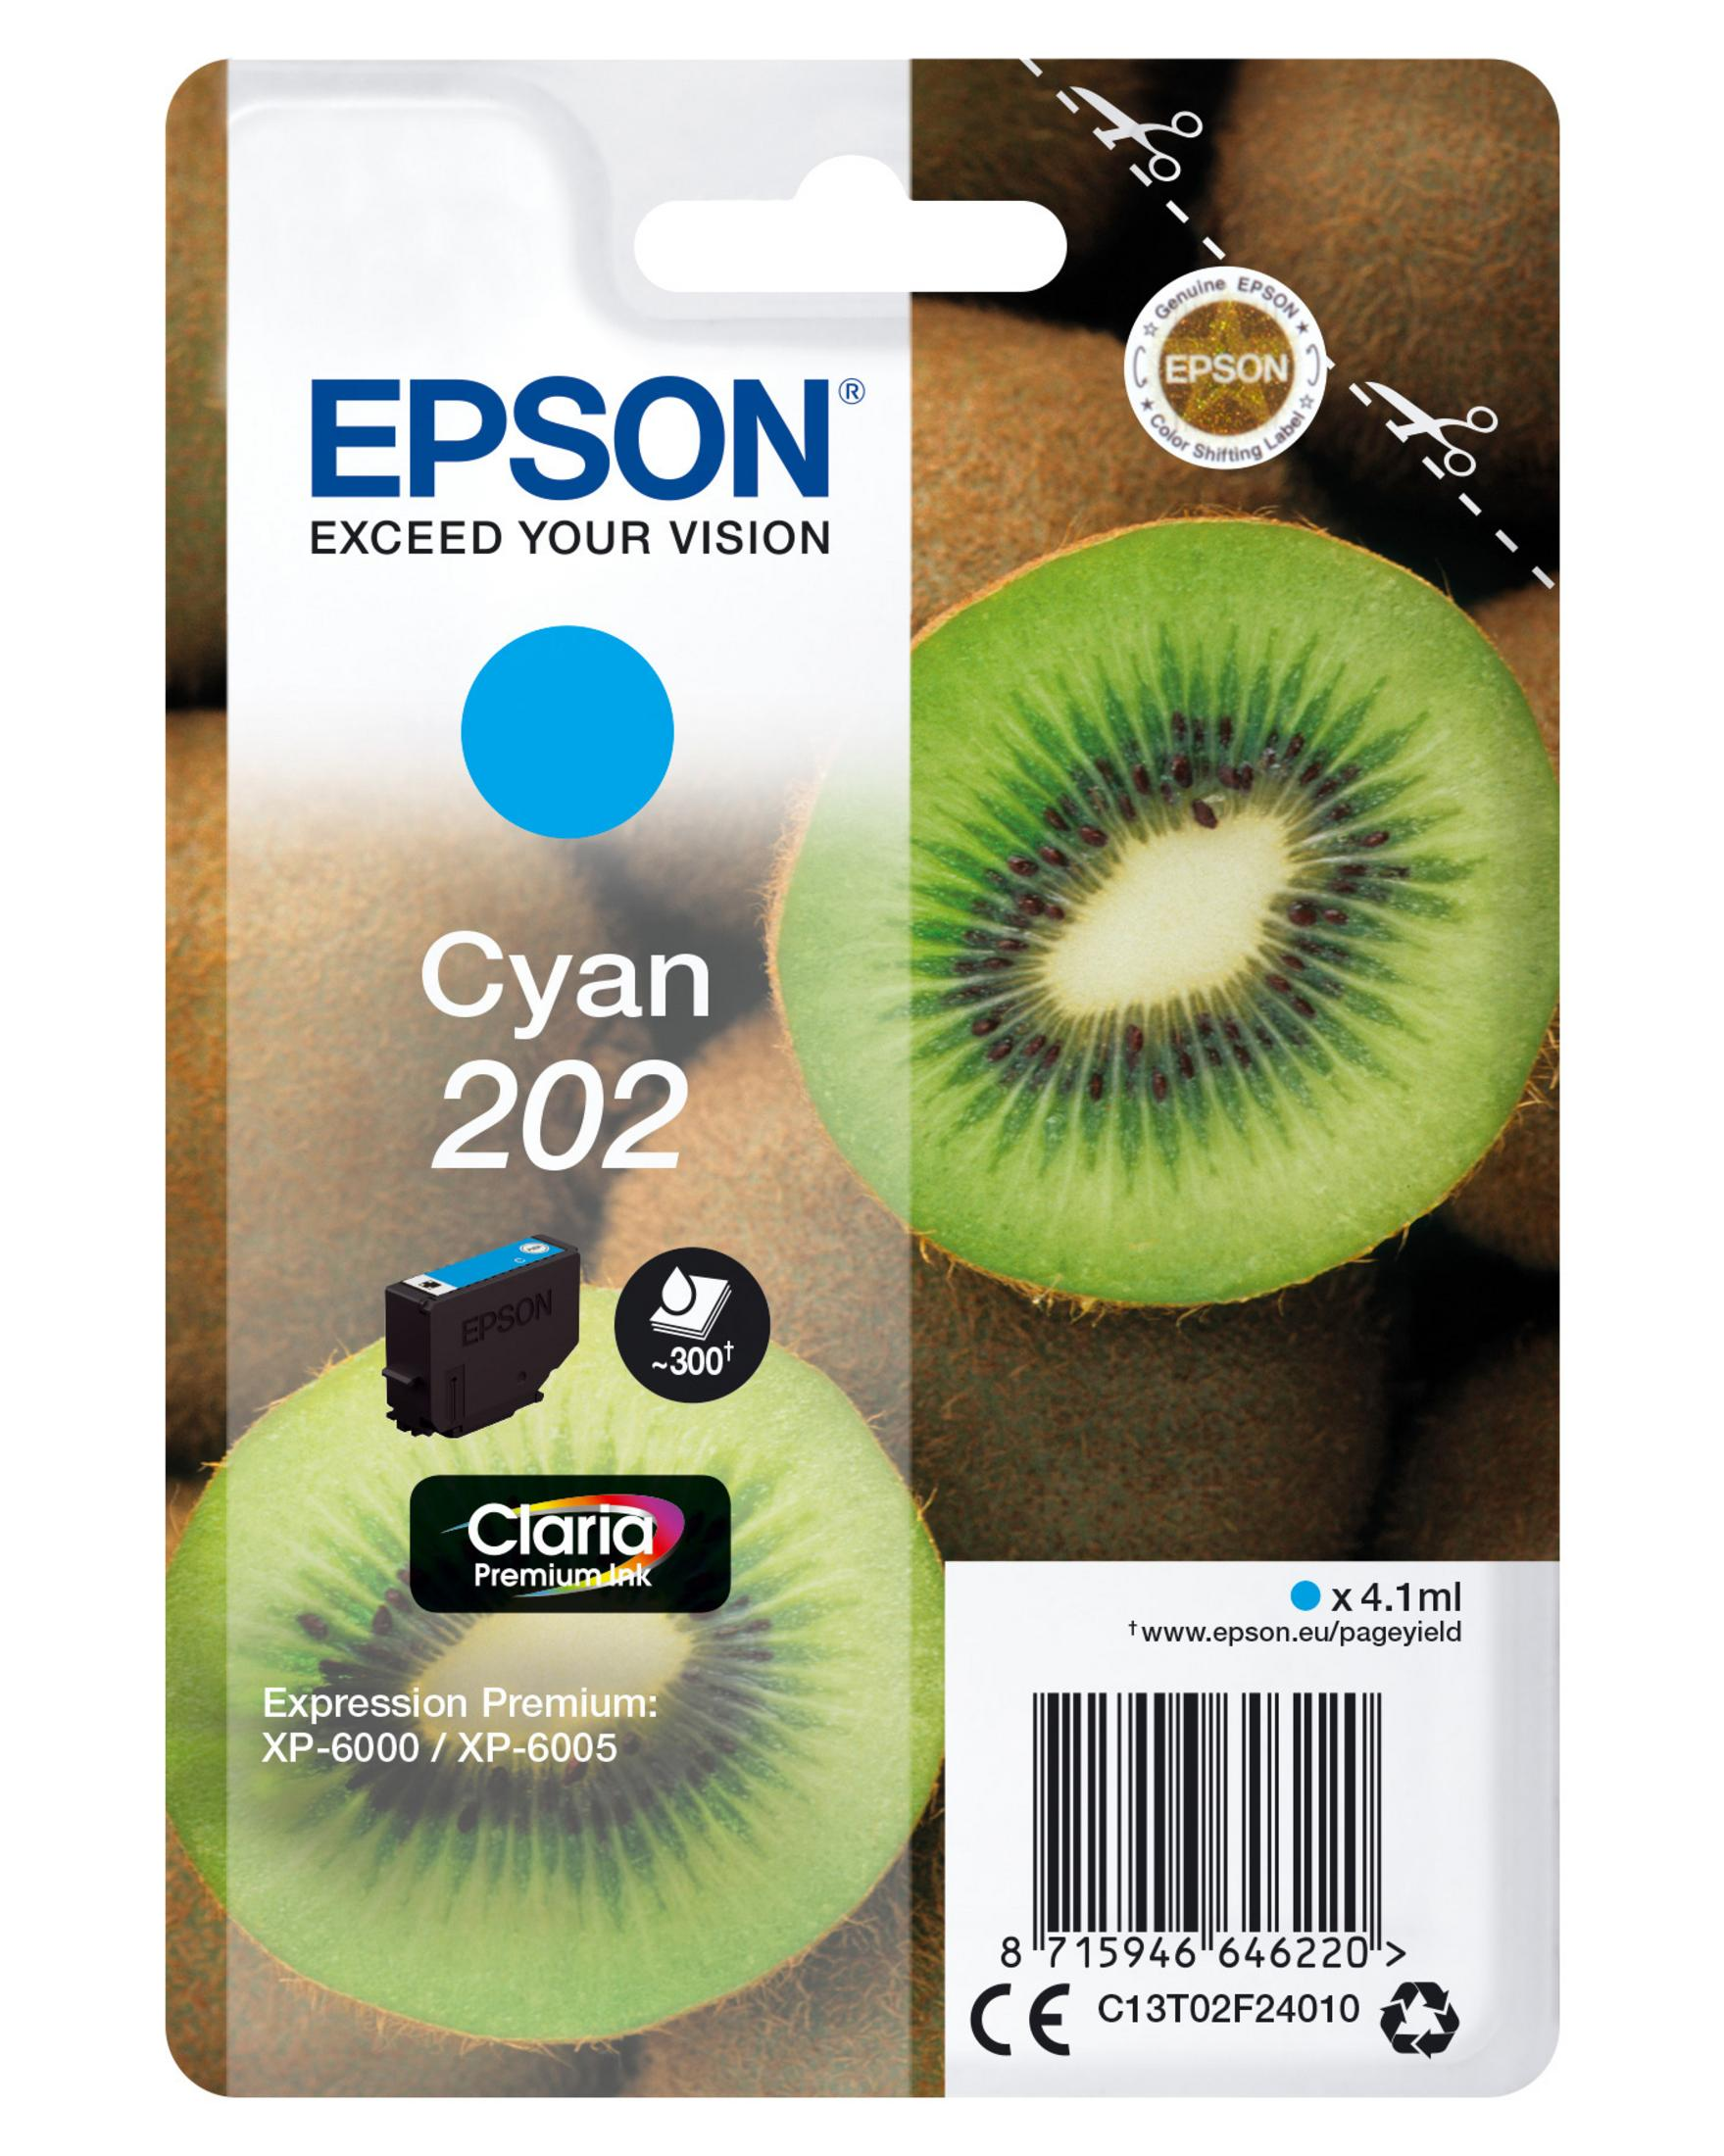 EPSON 202 Tinte cyan (C13T02F24010)